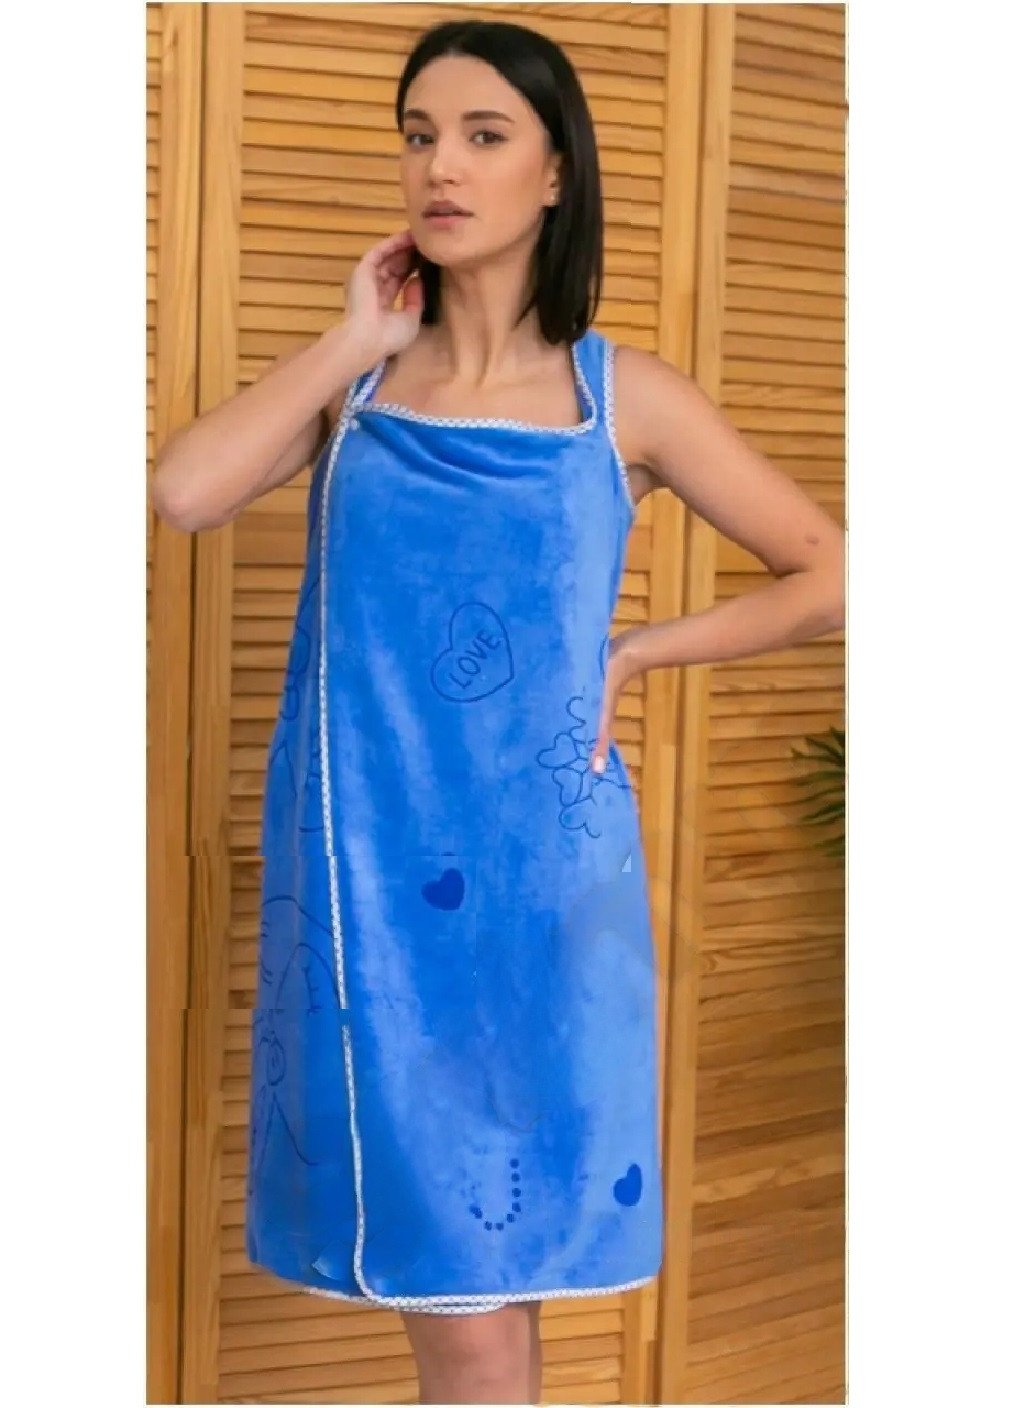 Unbranded полотенце халат для бани ванны сауны для тела микрофибра впитывает воду сохраняет тепло 135х80 см (474786-prob) синее рисунок синий производство -